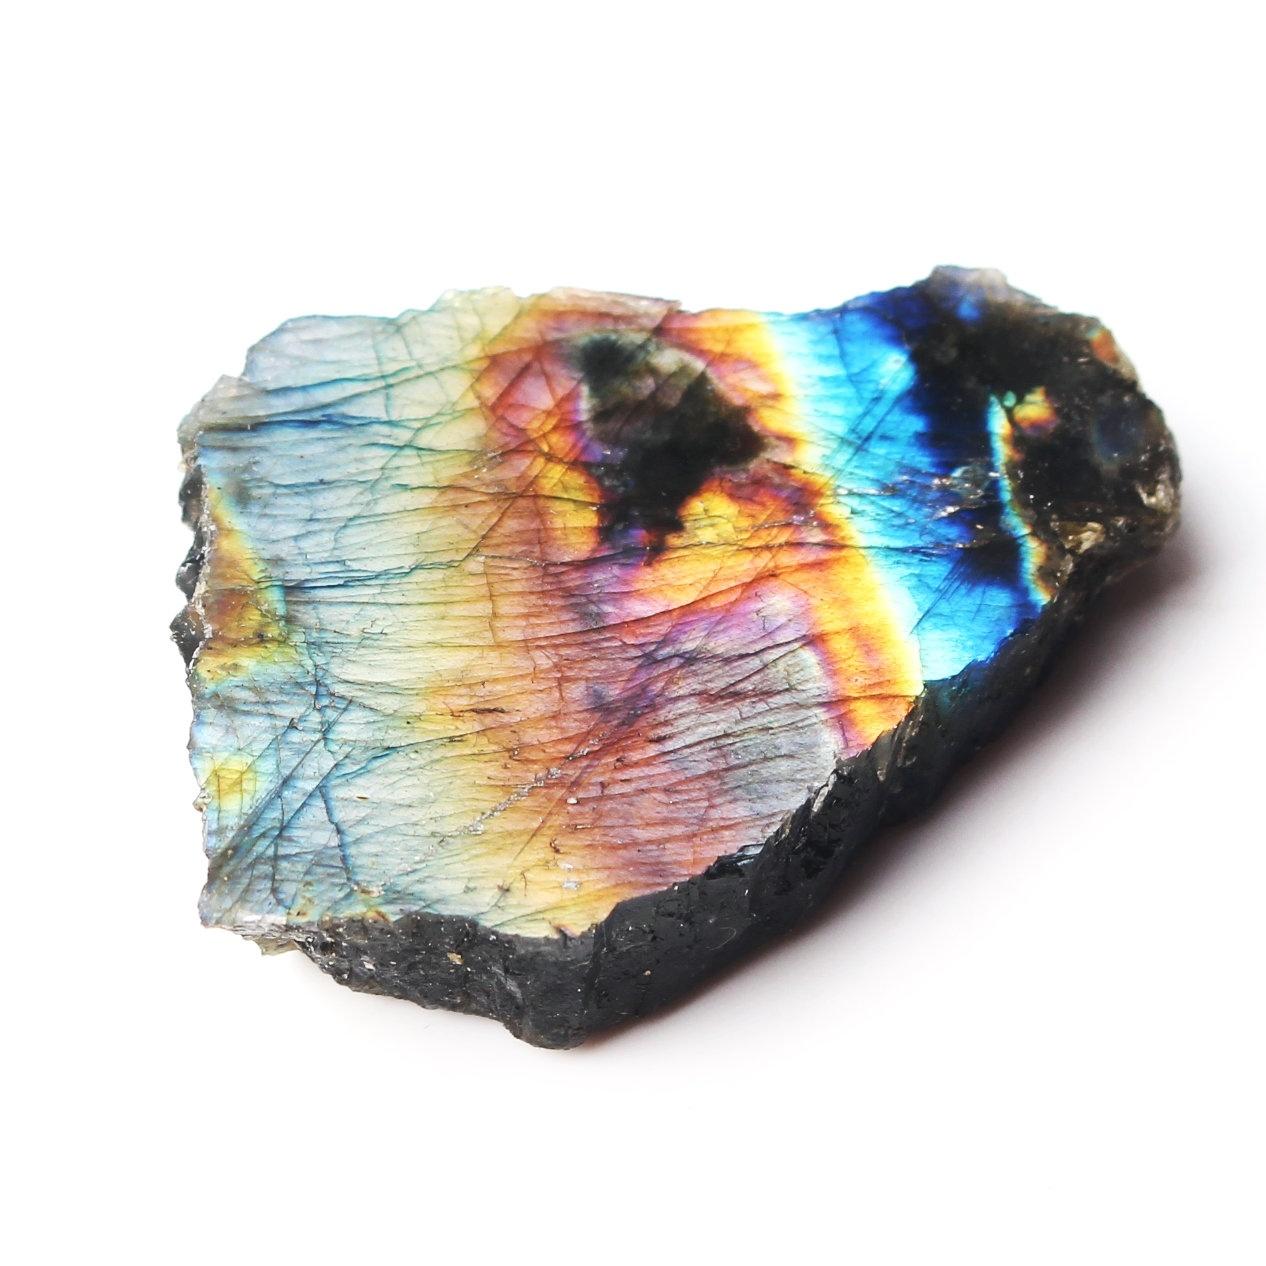 Изображение товара: 1 шт. 20-40 г натуральный Лабрадорит минеральный образец с одной стороны полированный камень грубый камень, реики драгоценный камень Исцеление